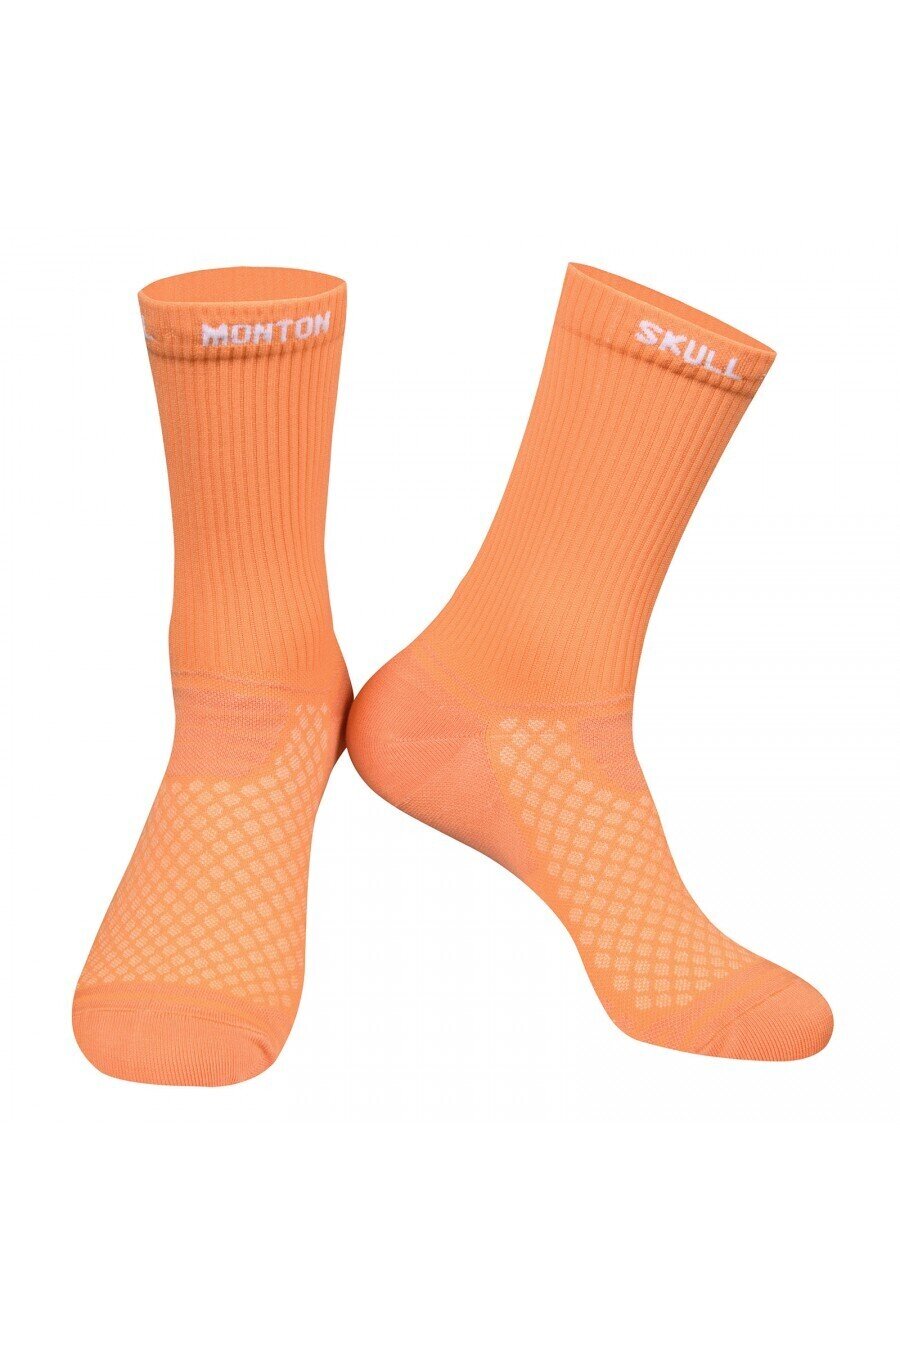 Monton SKULL Thursday Orange Socks